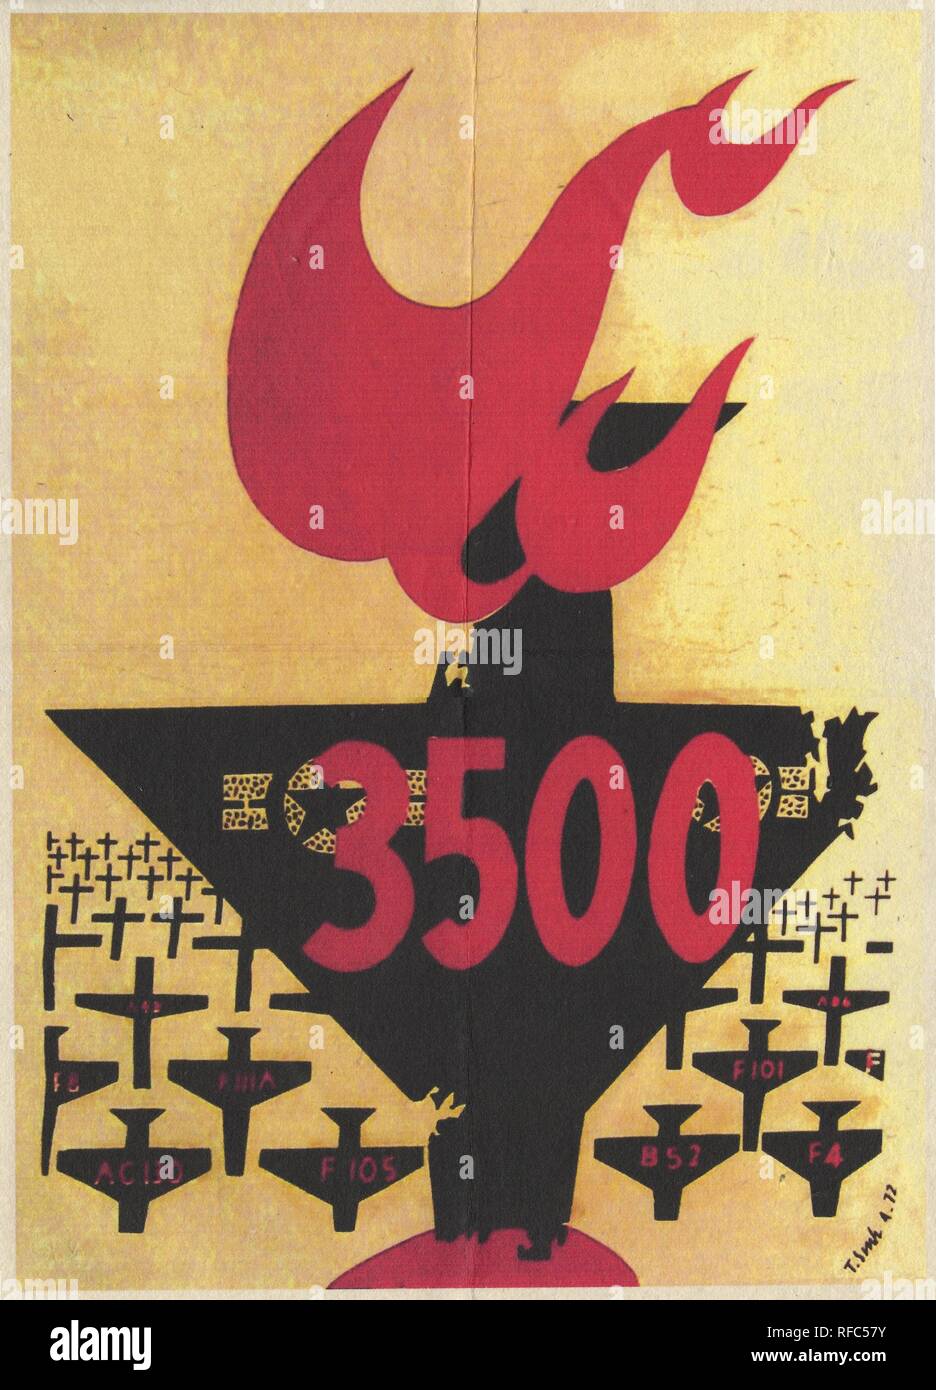 Vietnamesische Propaganda Poster, mit einem grafischen Entwurf mit der Silhouette eines großen, zentralen Flugzeug (mit USAF-Markierungen) Absturz nach unten mit seinem Schwanz auf Feuer, mit den Silhouetten von kleineren Flugzeugen (die in den Vordergrund nach Art gekennzeichnet, die im Hintergrund als Kreuze dargestellt) hat mit dem Text '3500' auf der zentralen Ebene geschrieben, wahrscheinlich feiert die Anzahl der US-Flugzeuge abgeschossen von der Vietnamesischen Militär, während des Vietnamkriegs, April, 1972 veröffentlicht. () Stockfoto